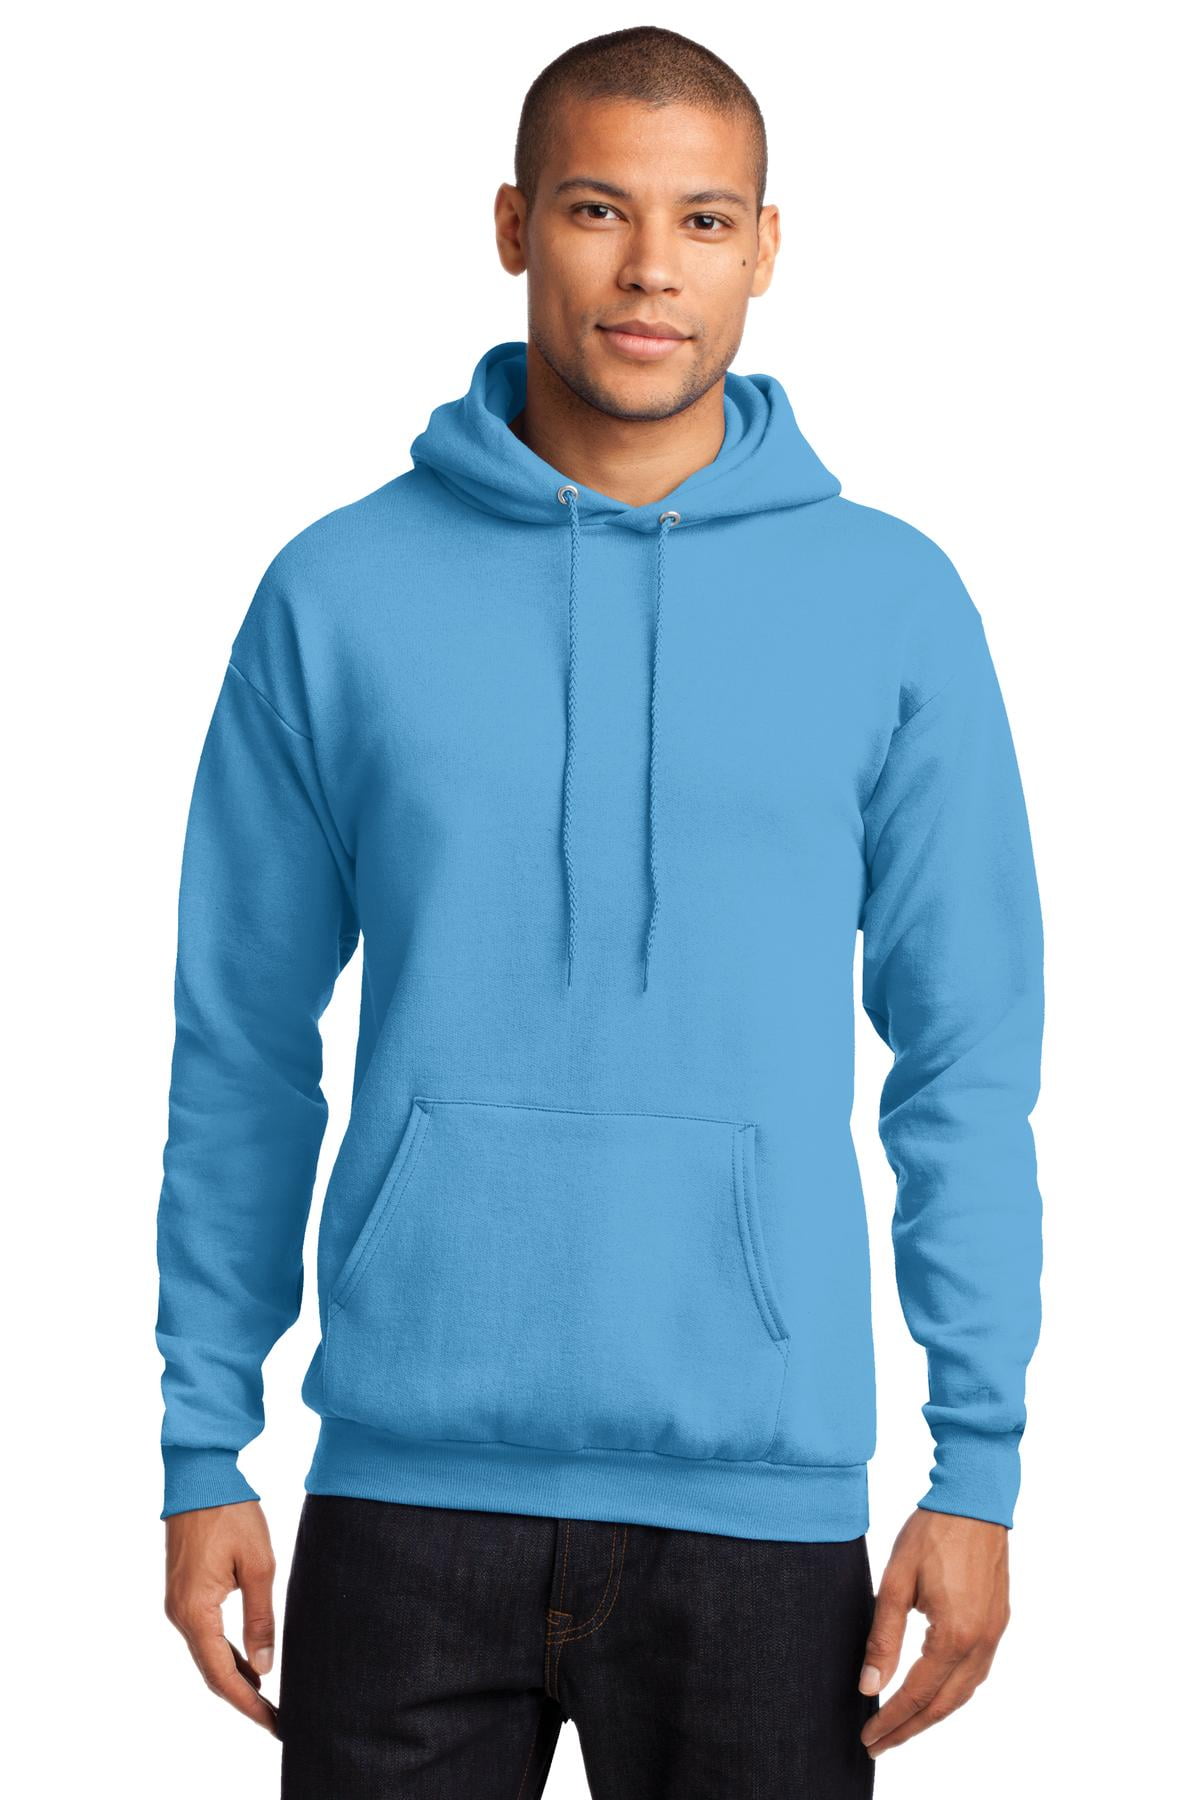 Bestudeer grens resterend Port & Company - Core Fleece Pullover Hooded Sweatshirt - Walmart.com